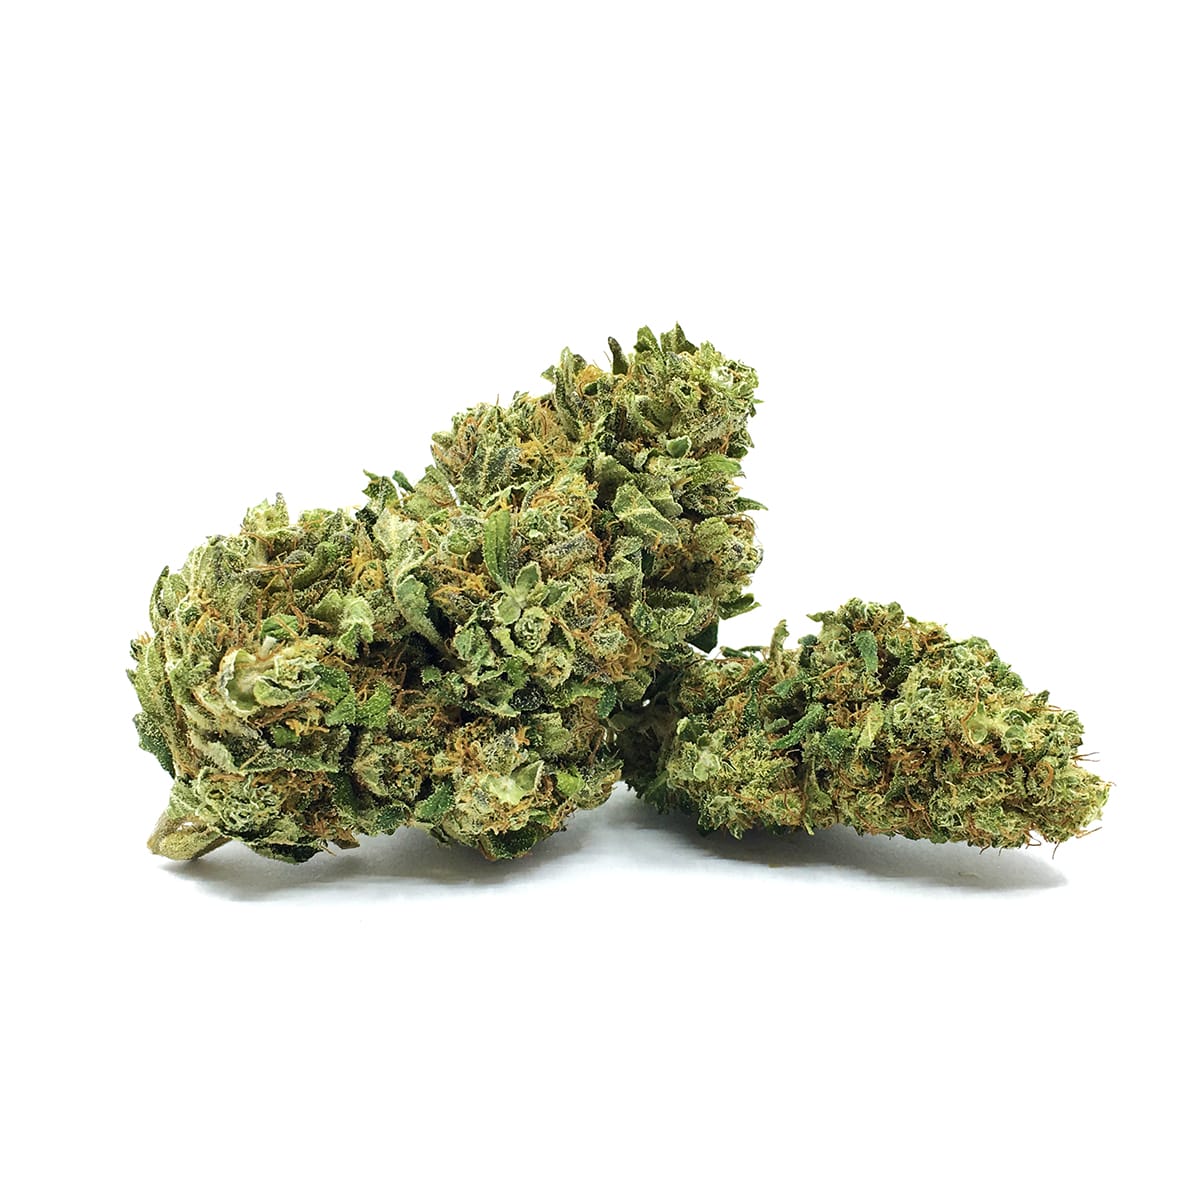 Weed CBD - Green Kartel  : Votre boutique CBD spécialisée en fleur et résine CBD